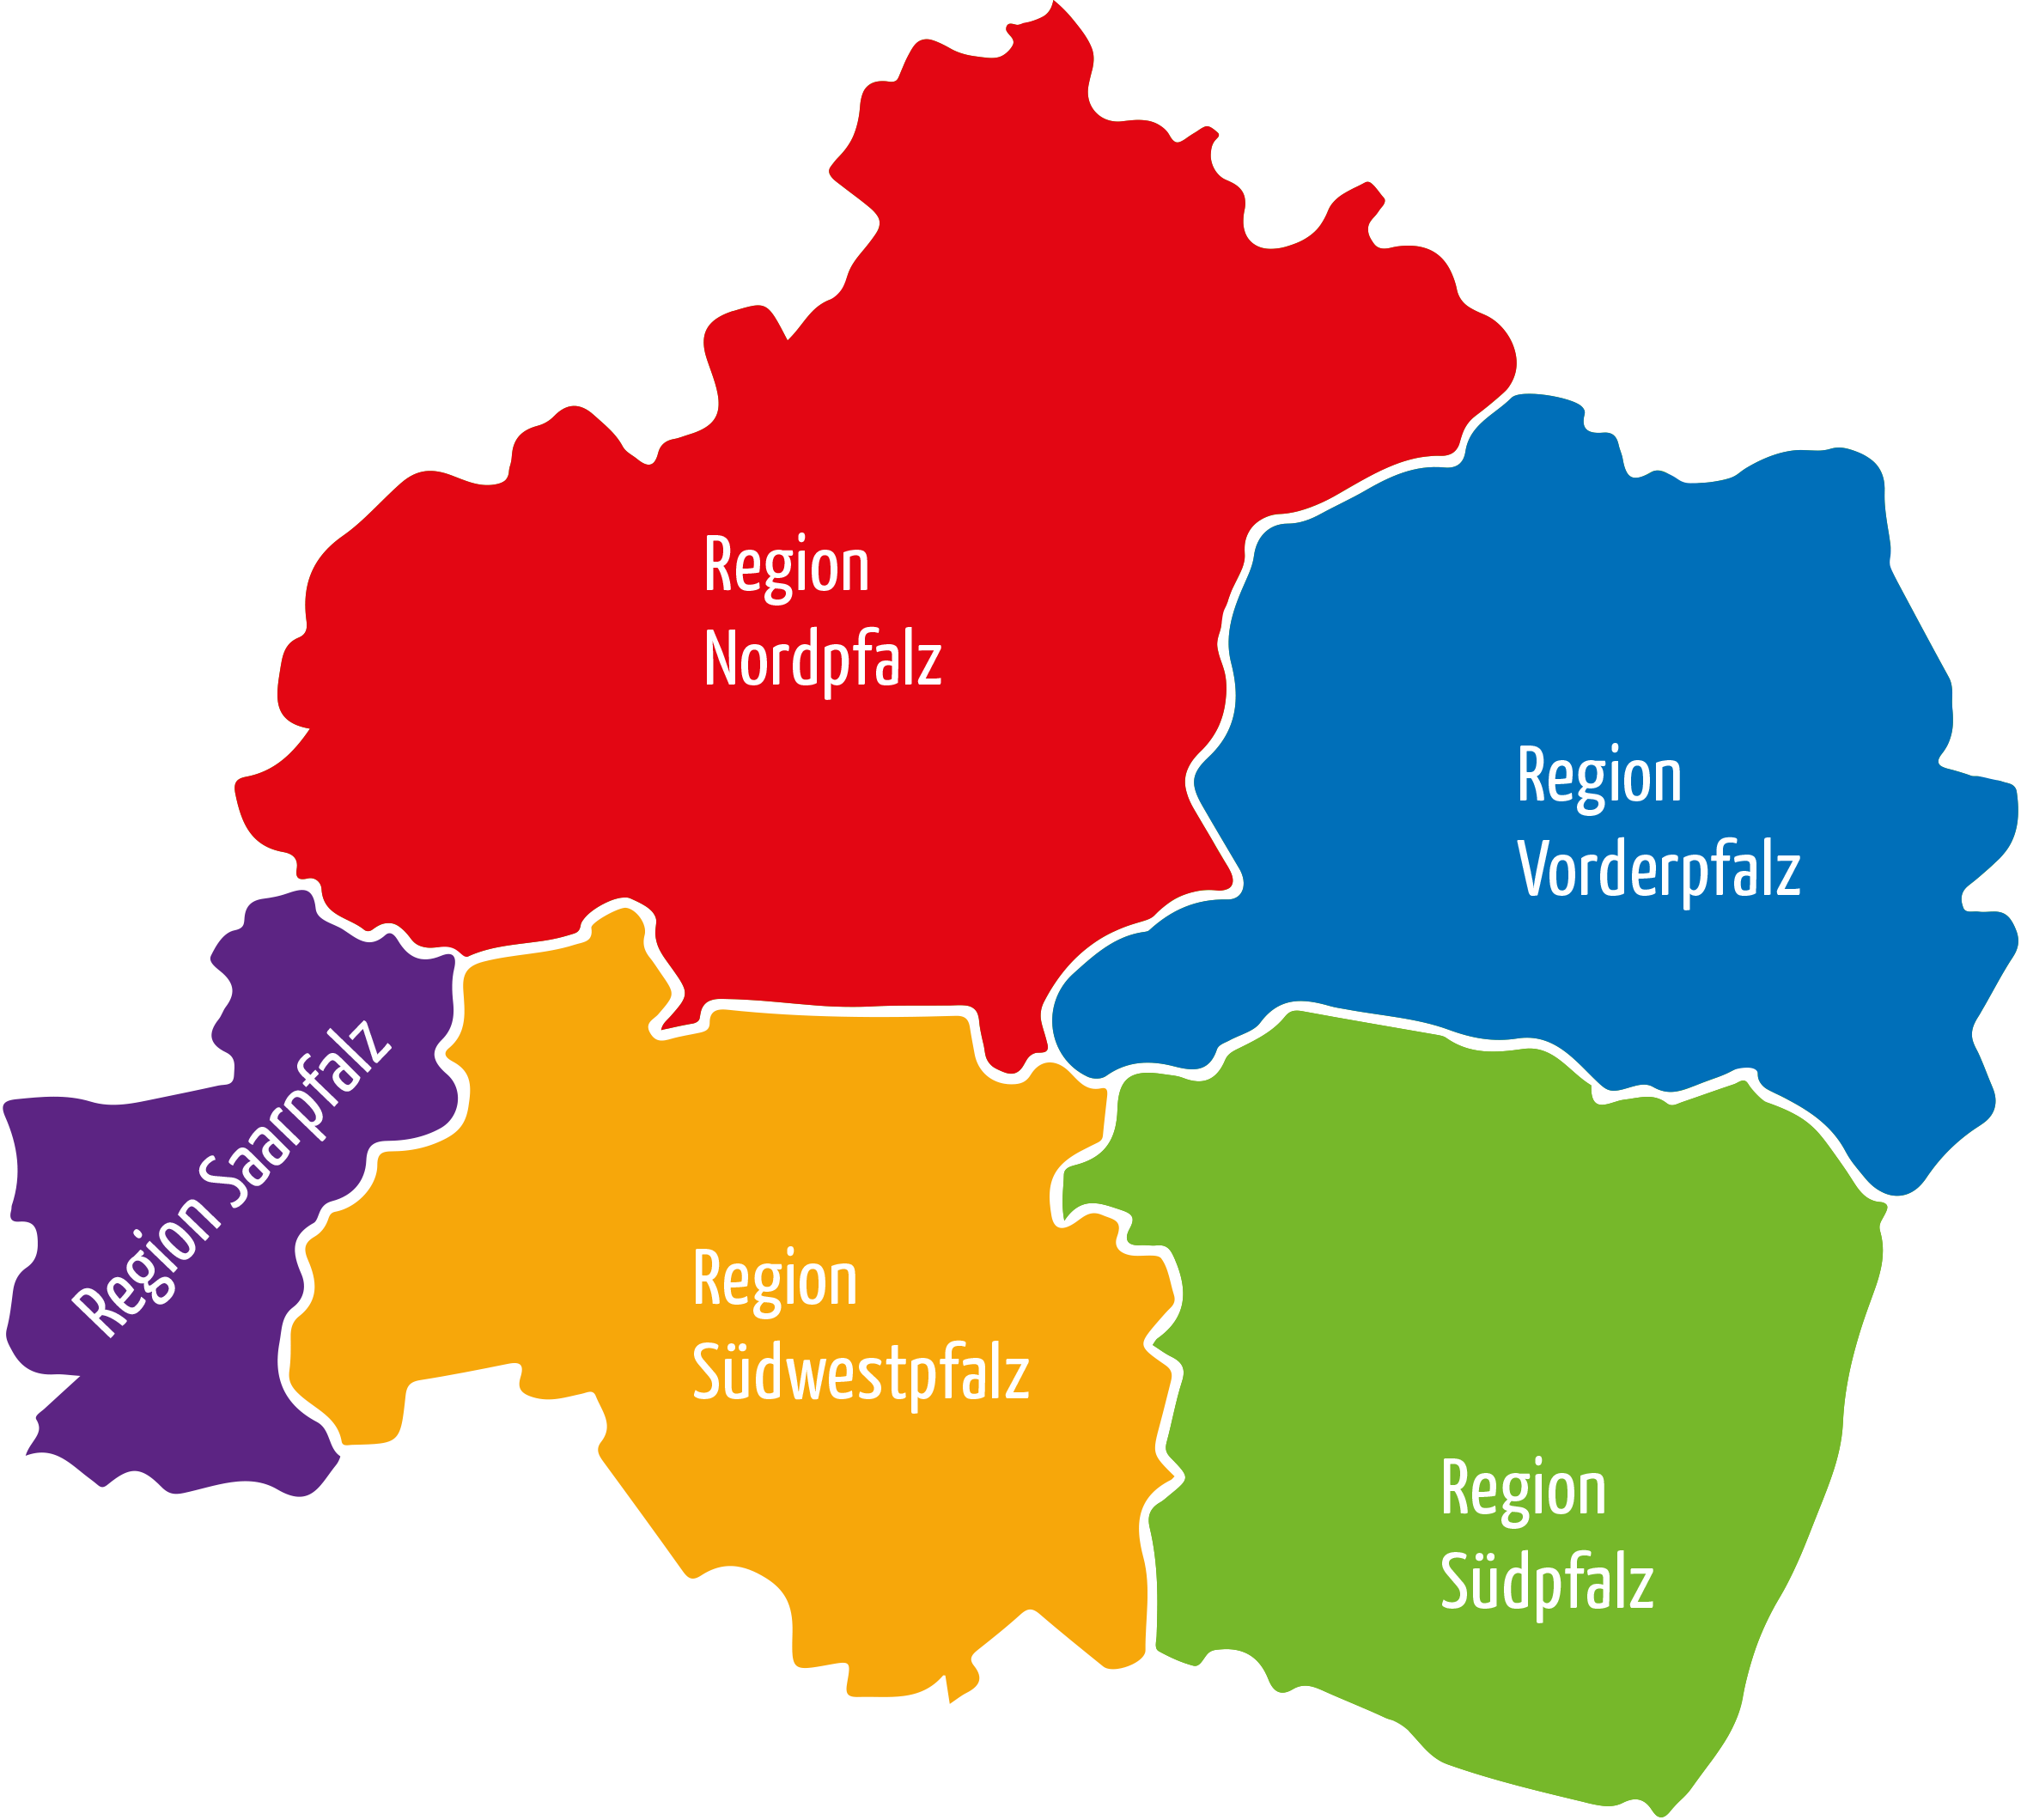 Karte der fünf BDKJ Regionen. Fabrlich hervorgehoben.